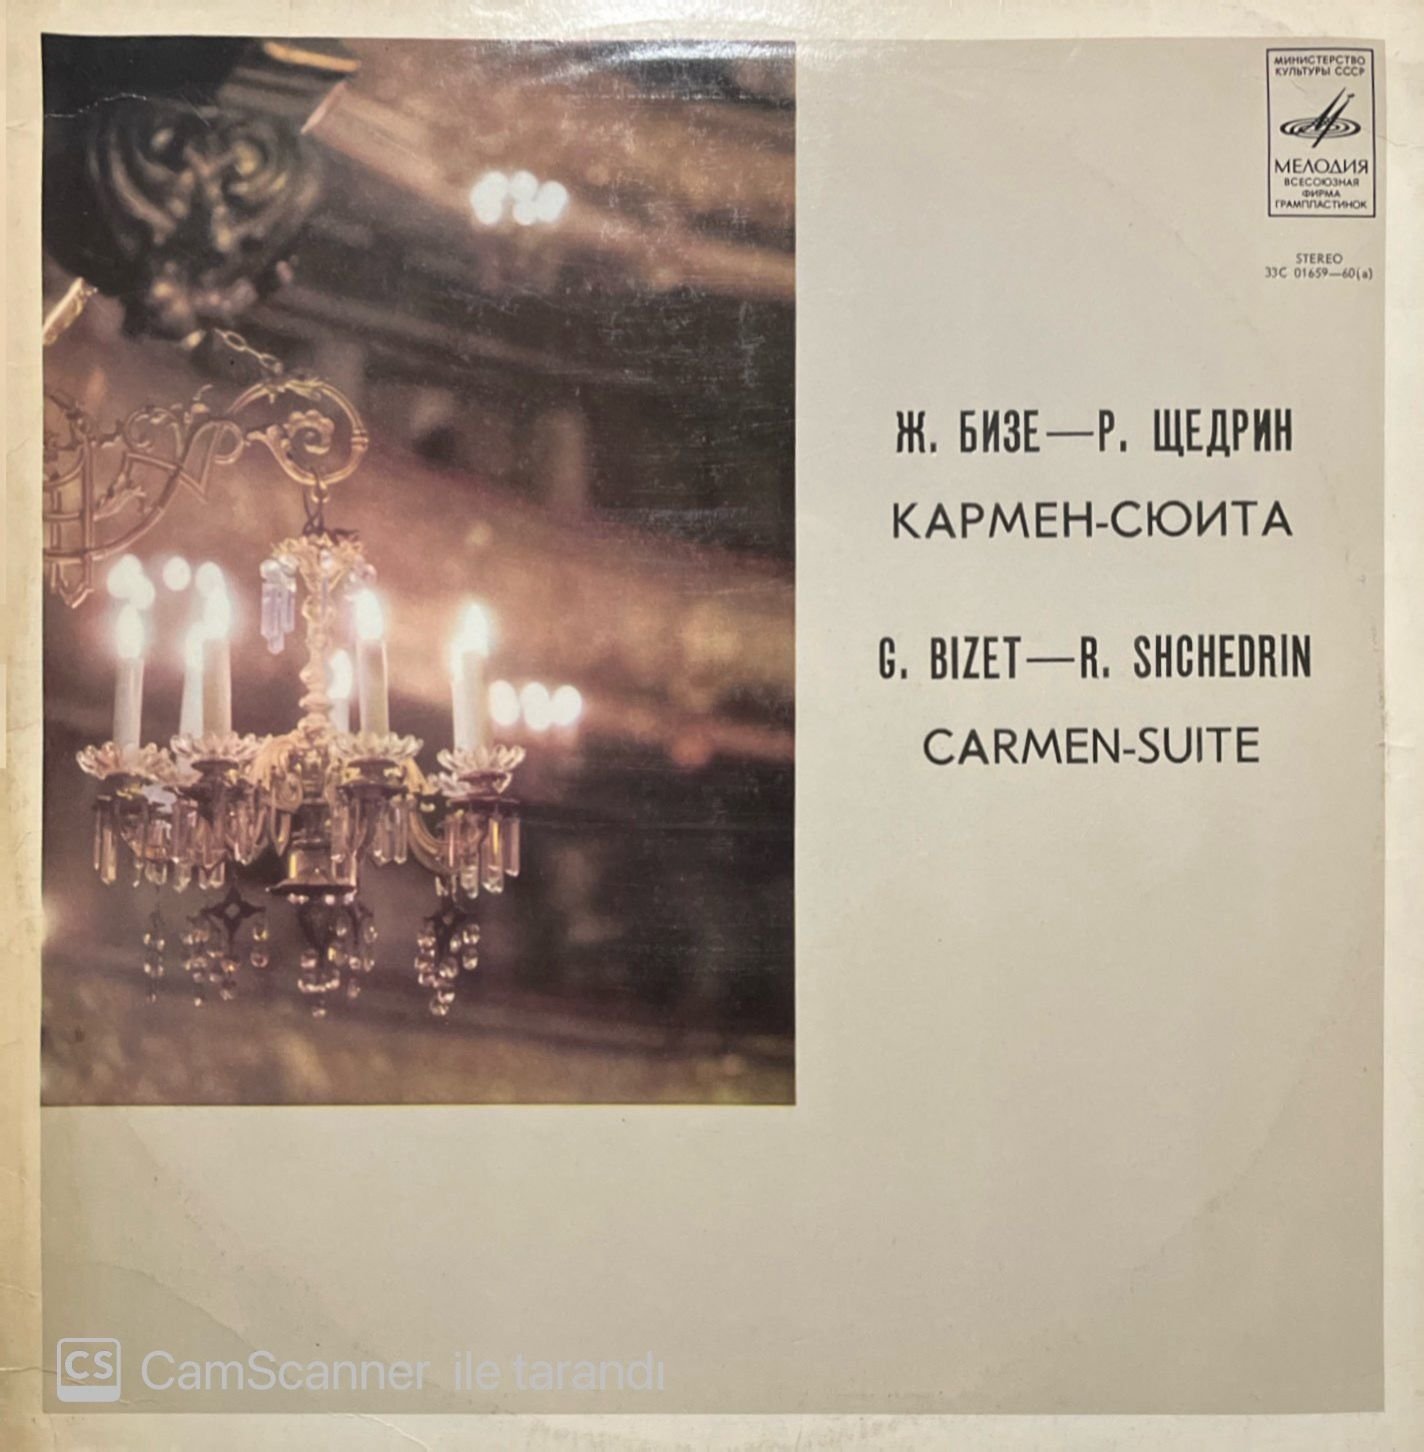 G. Bizet - R. Shchedrin Carmen Suite LP Plak